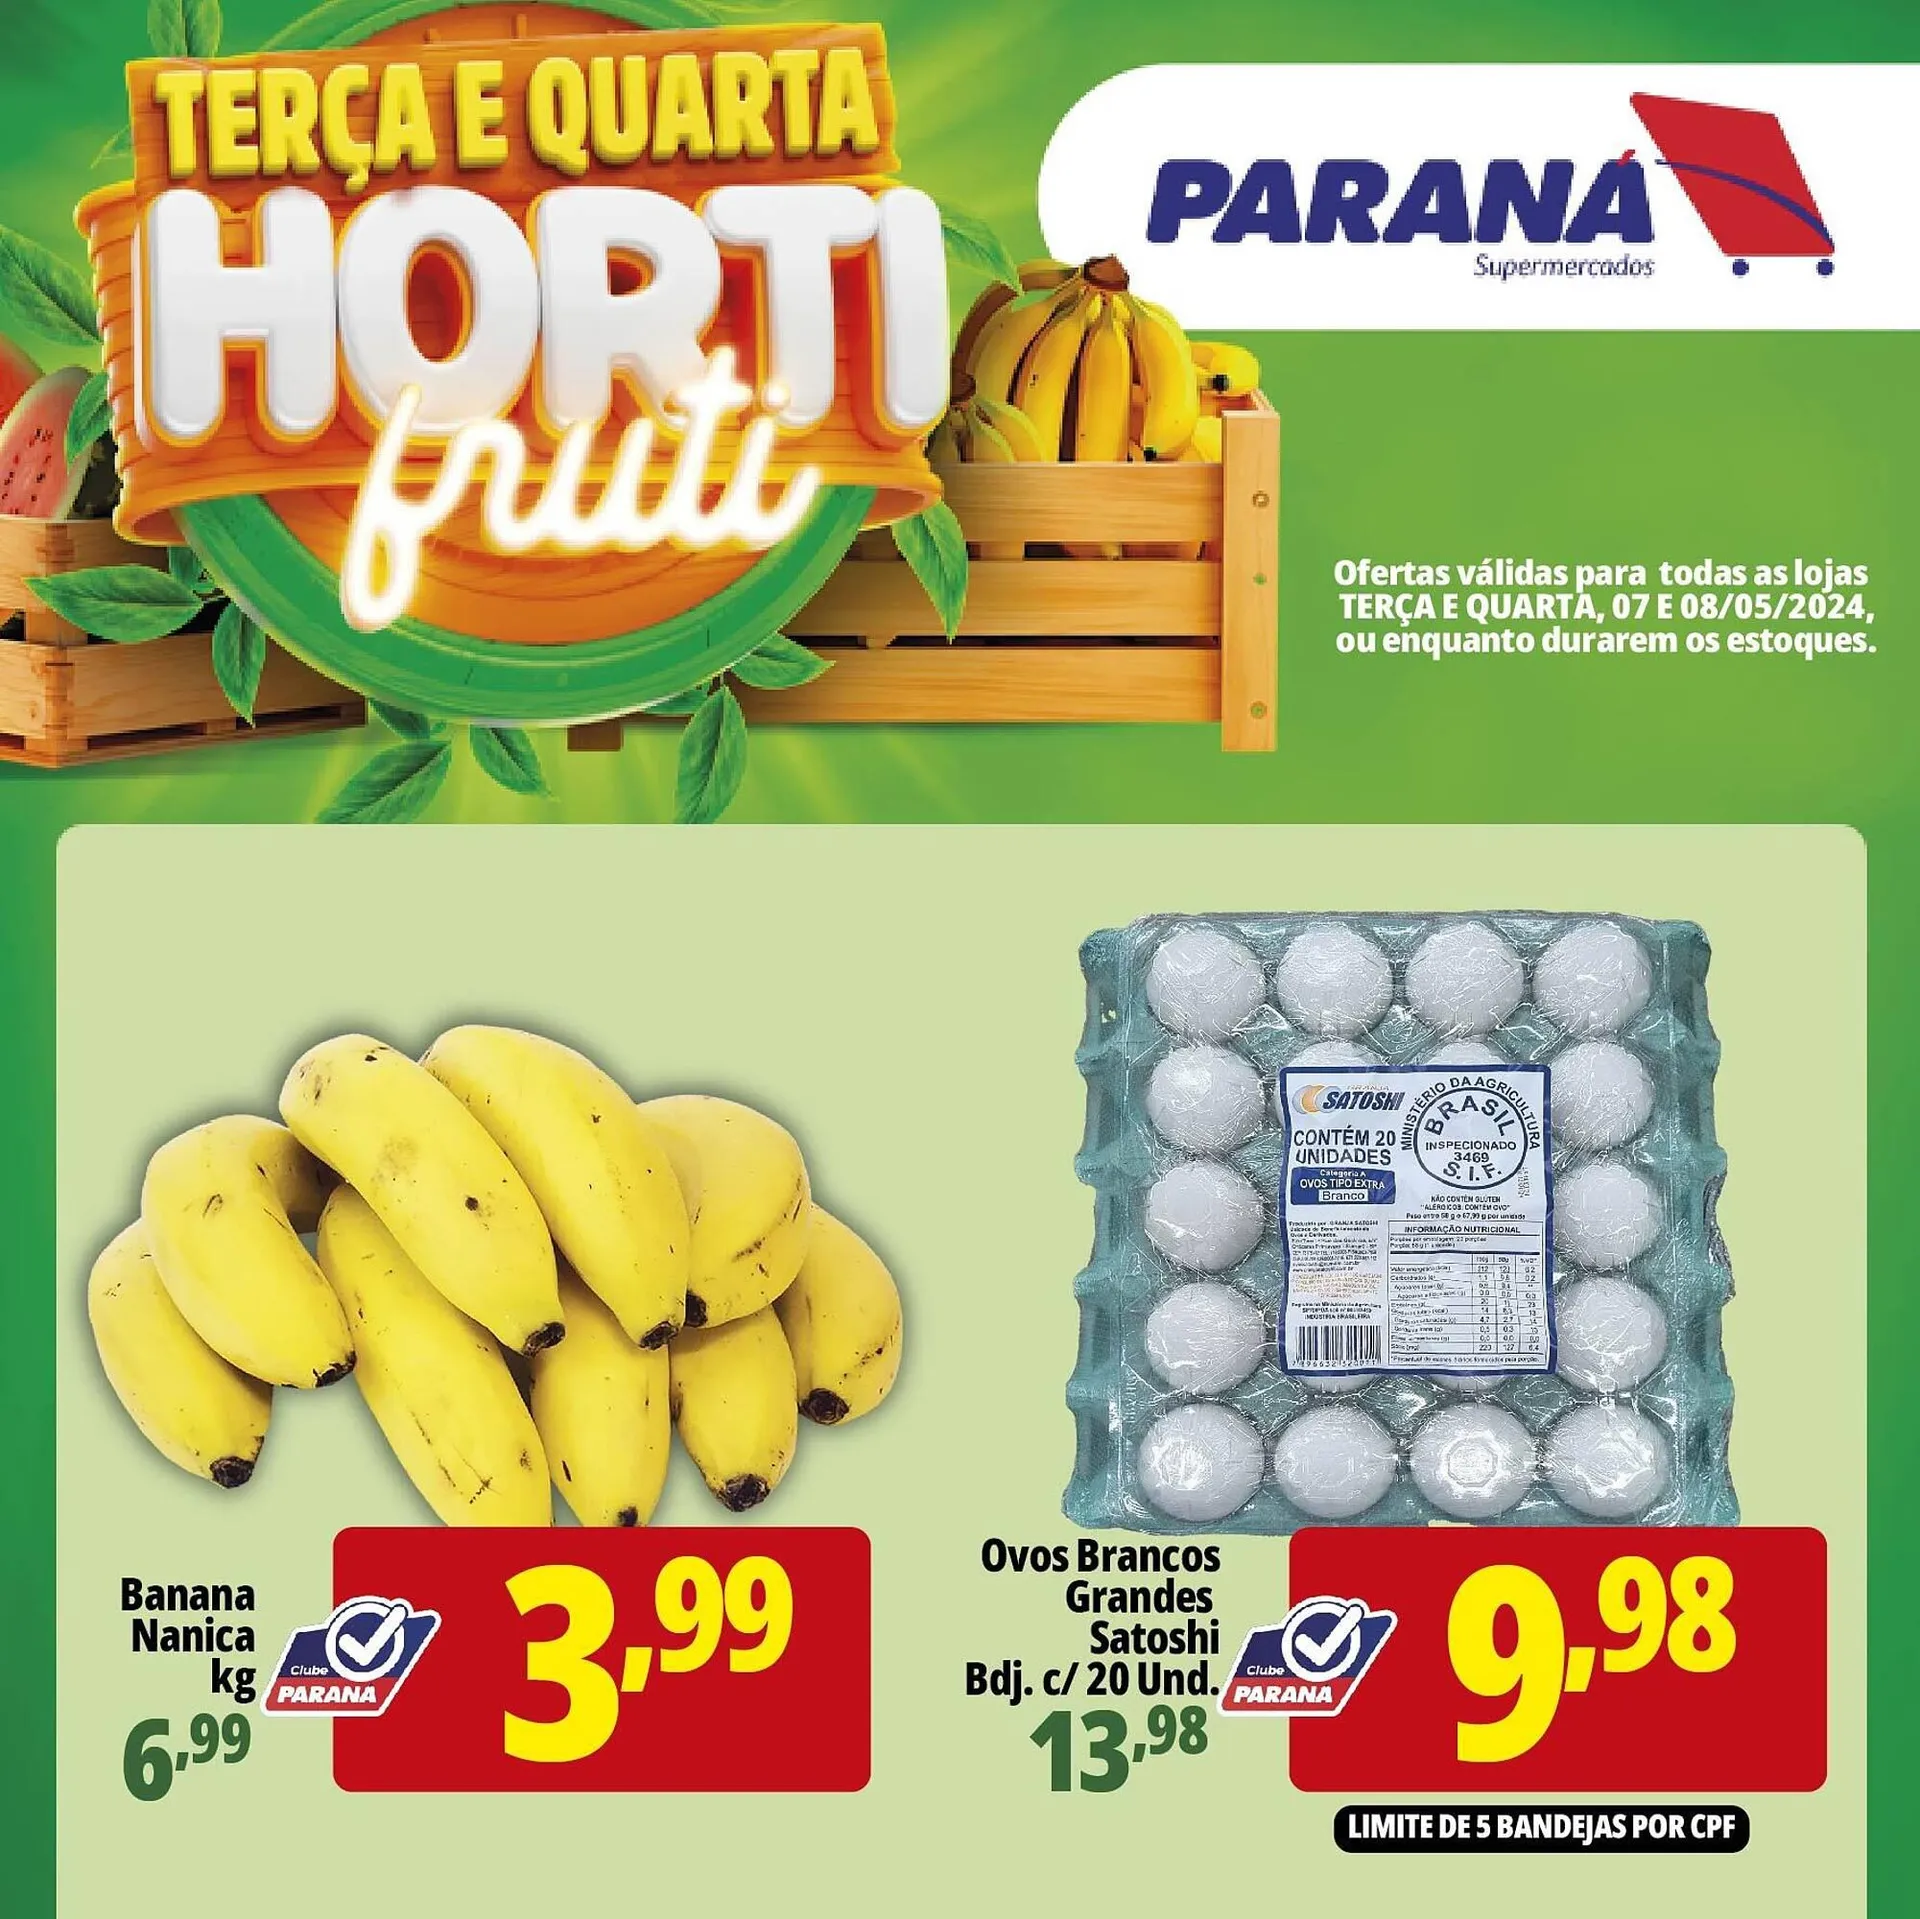 Catálogo Supermercado Paraná - 1